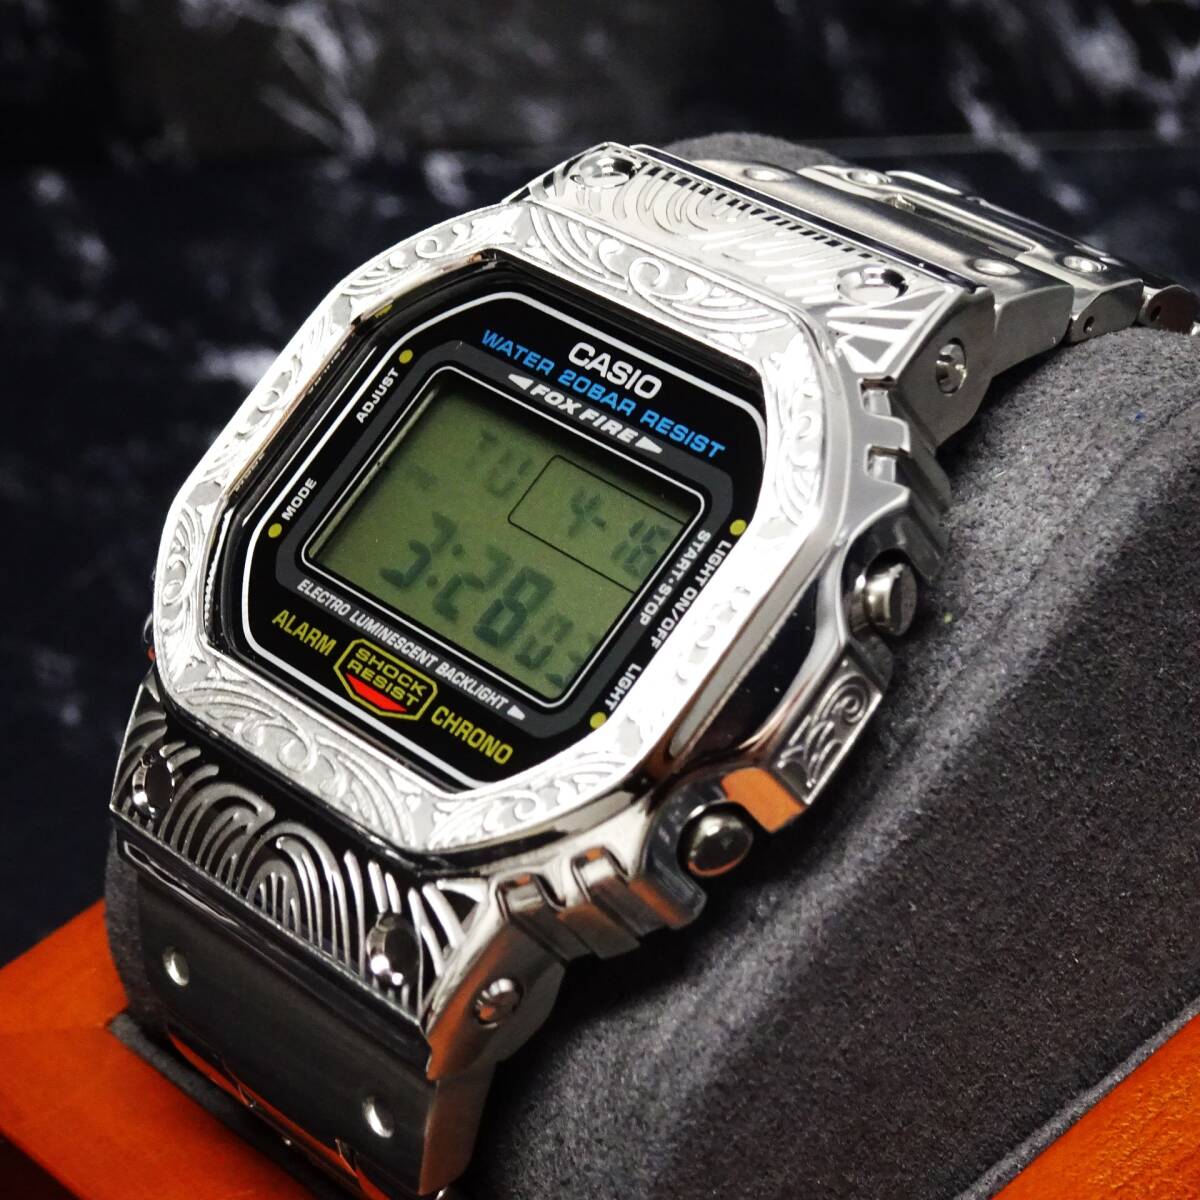 〓送料無料〓新品〓Gショックカスタム本体付きDW5600デジタル腕時計ステンレス製ベネチアン柄エンボス加工ベゼル・フルメタルモデルの画像7